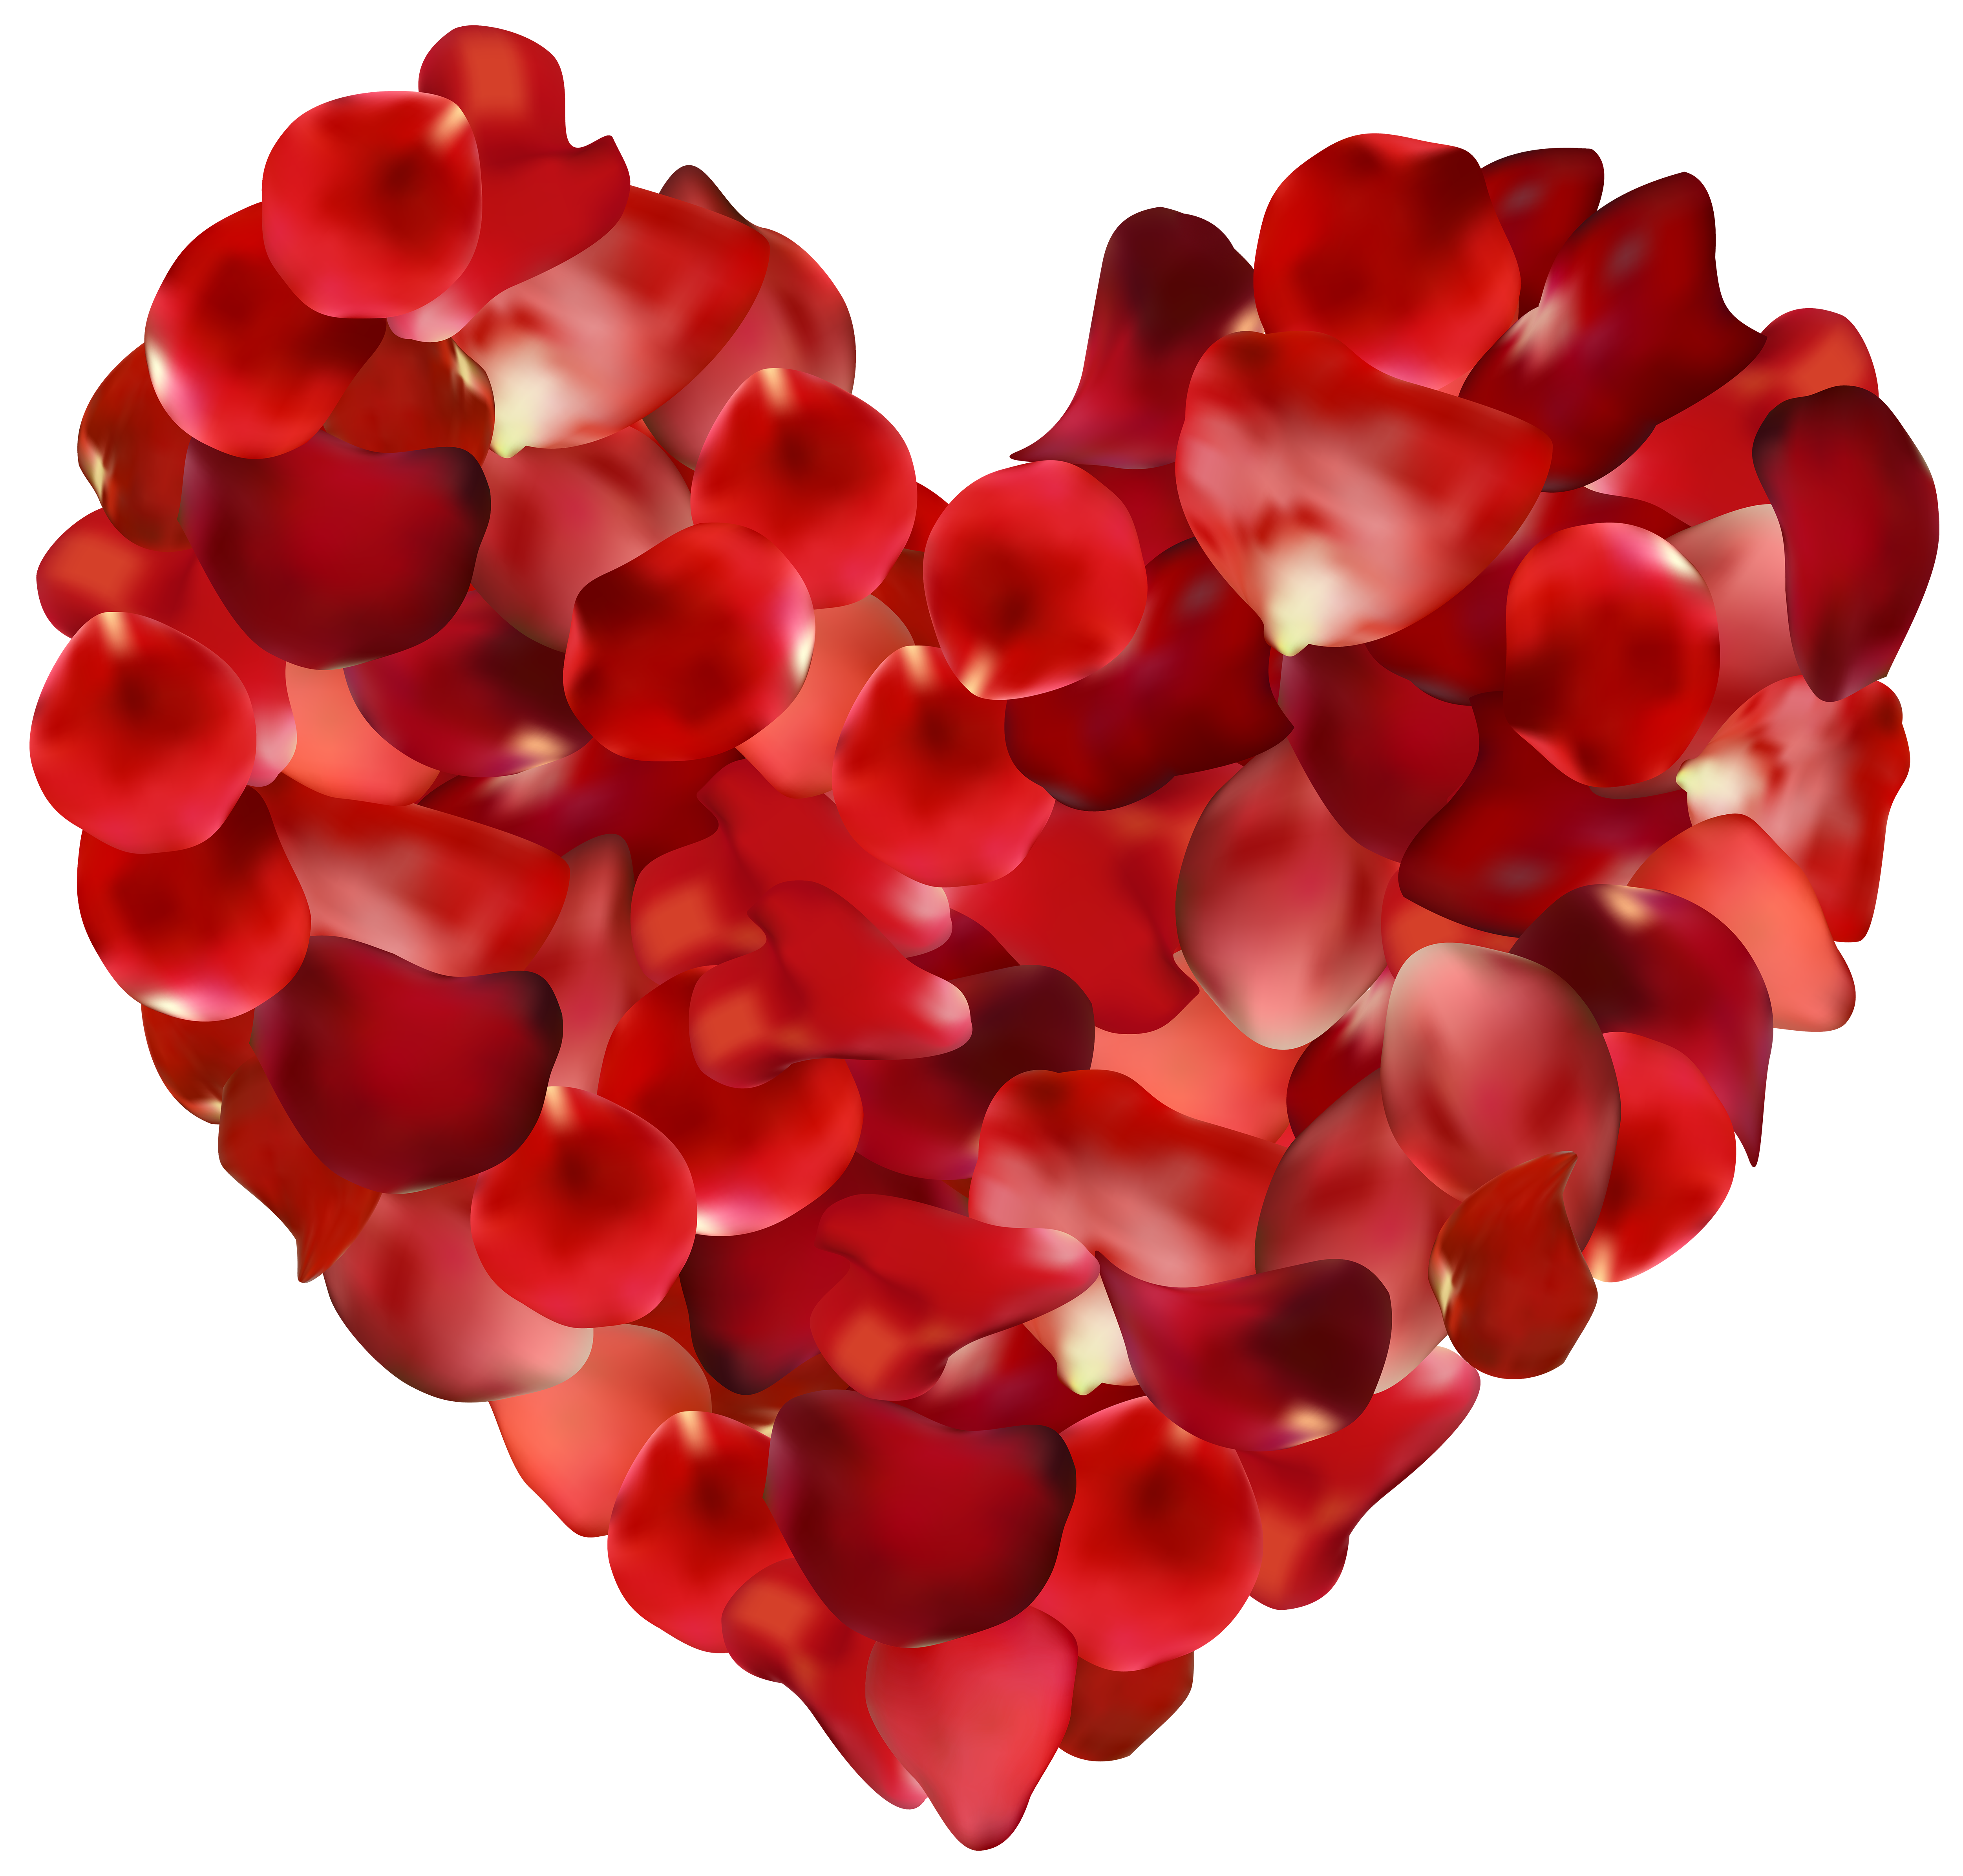 Rose Petals Hearts Transparent PNG Clip Art Image.